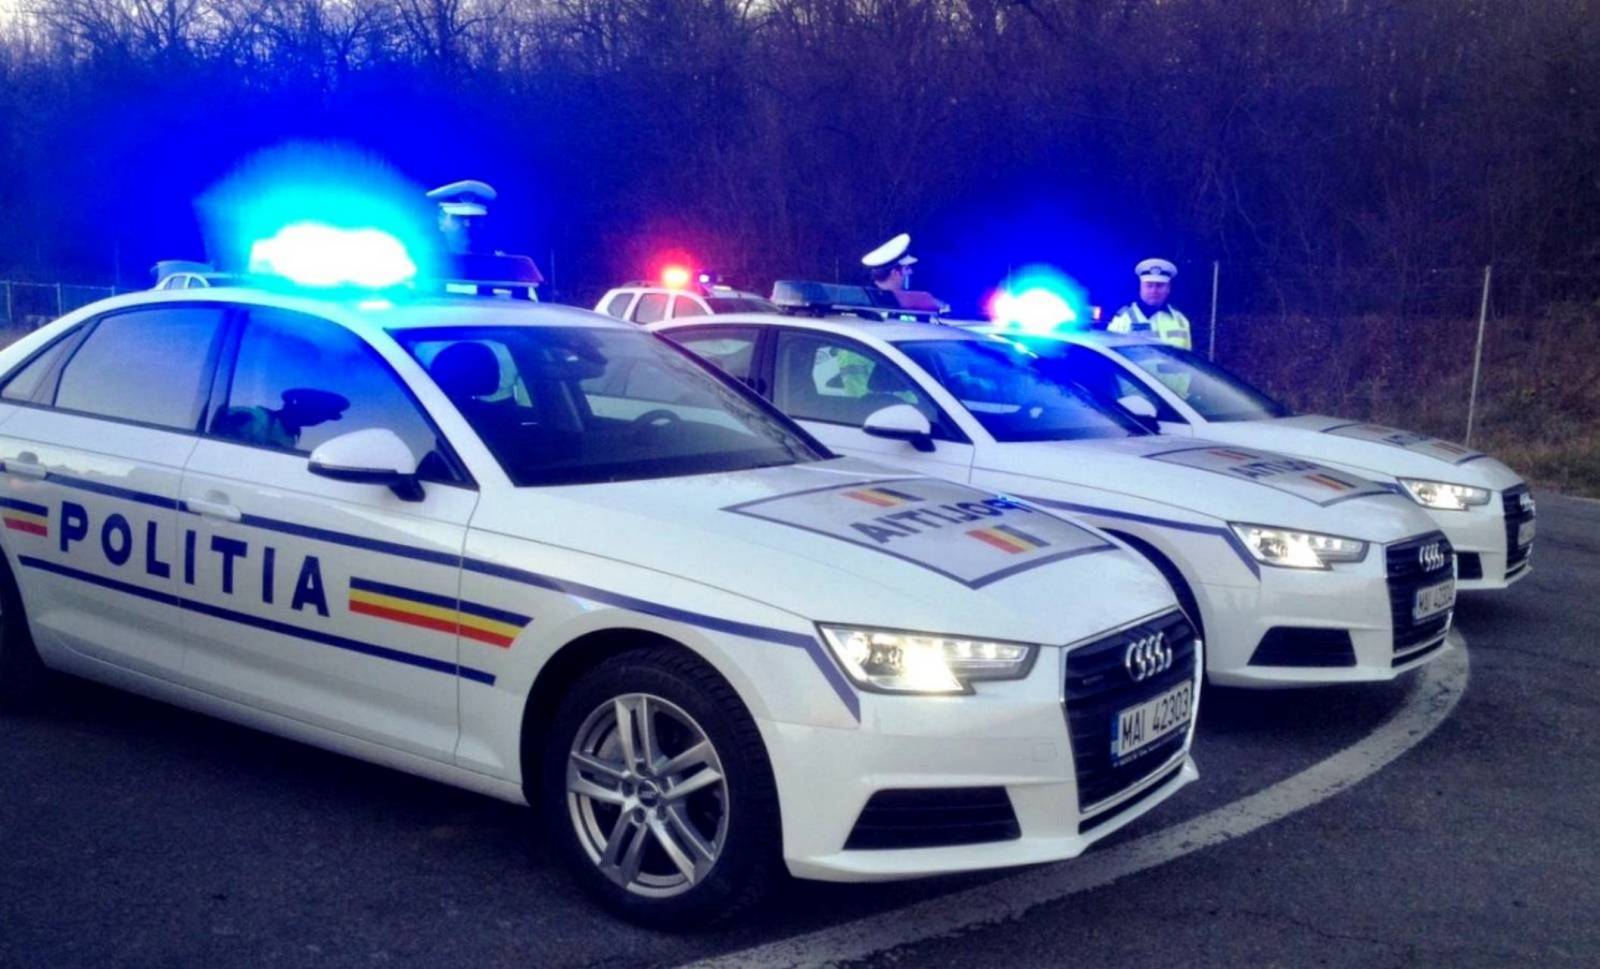 Multe firmate dalla polizia rumena causa COVID-19 nelle ultime 24 ore